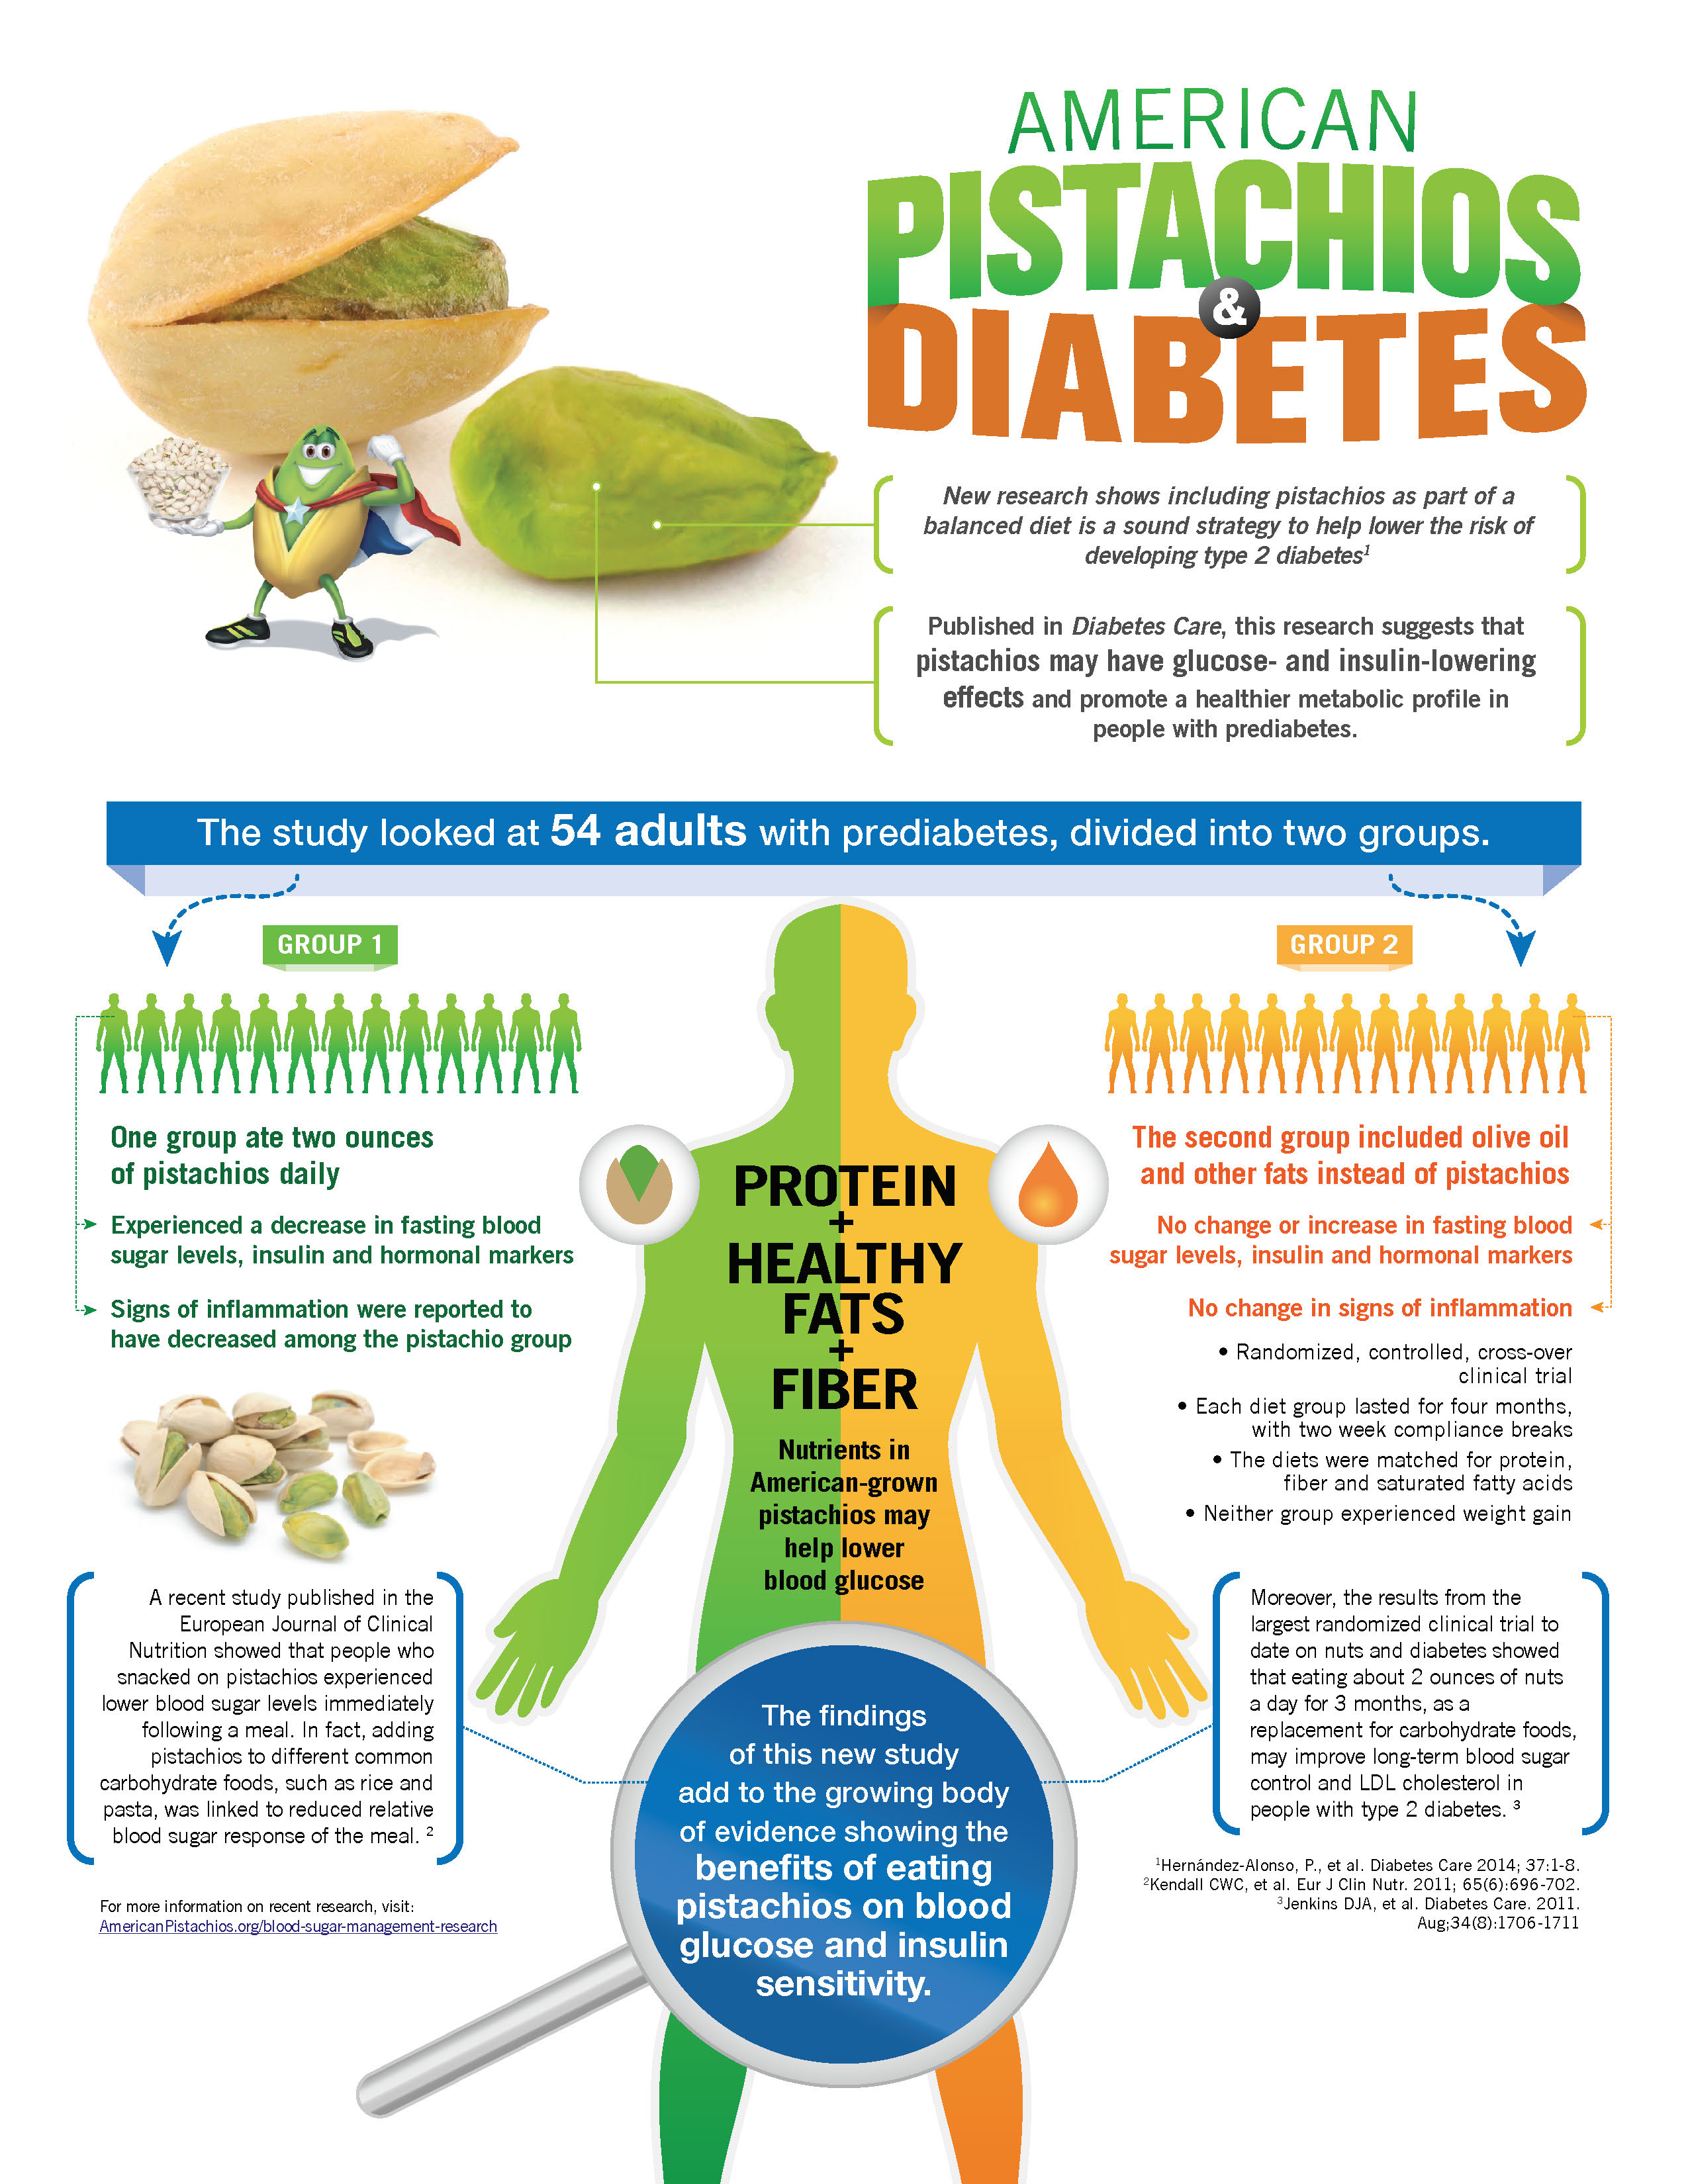 Diabetes Infographic